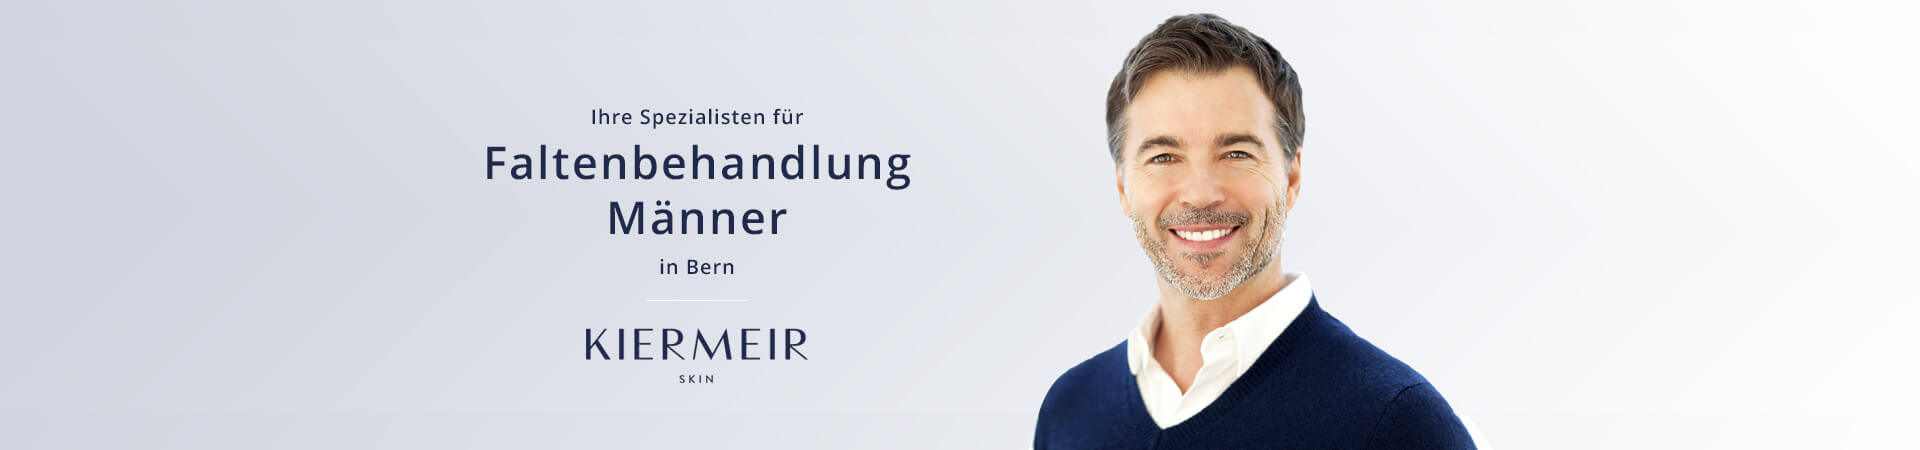 Faltenbehandlung für Männer in Bern - Dr. Kiermeir 